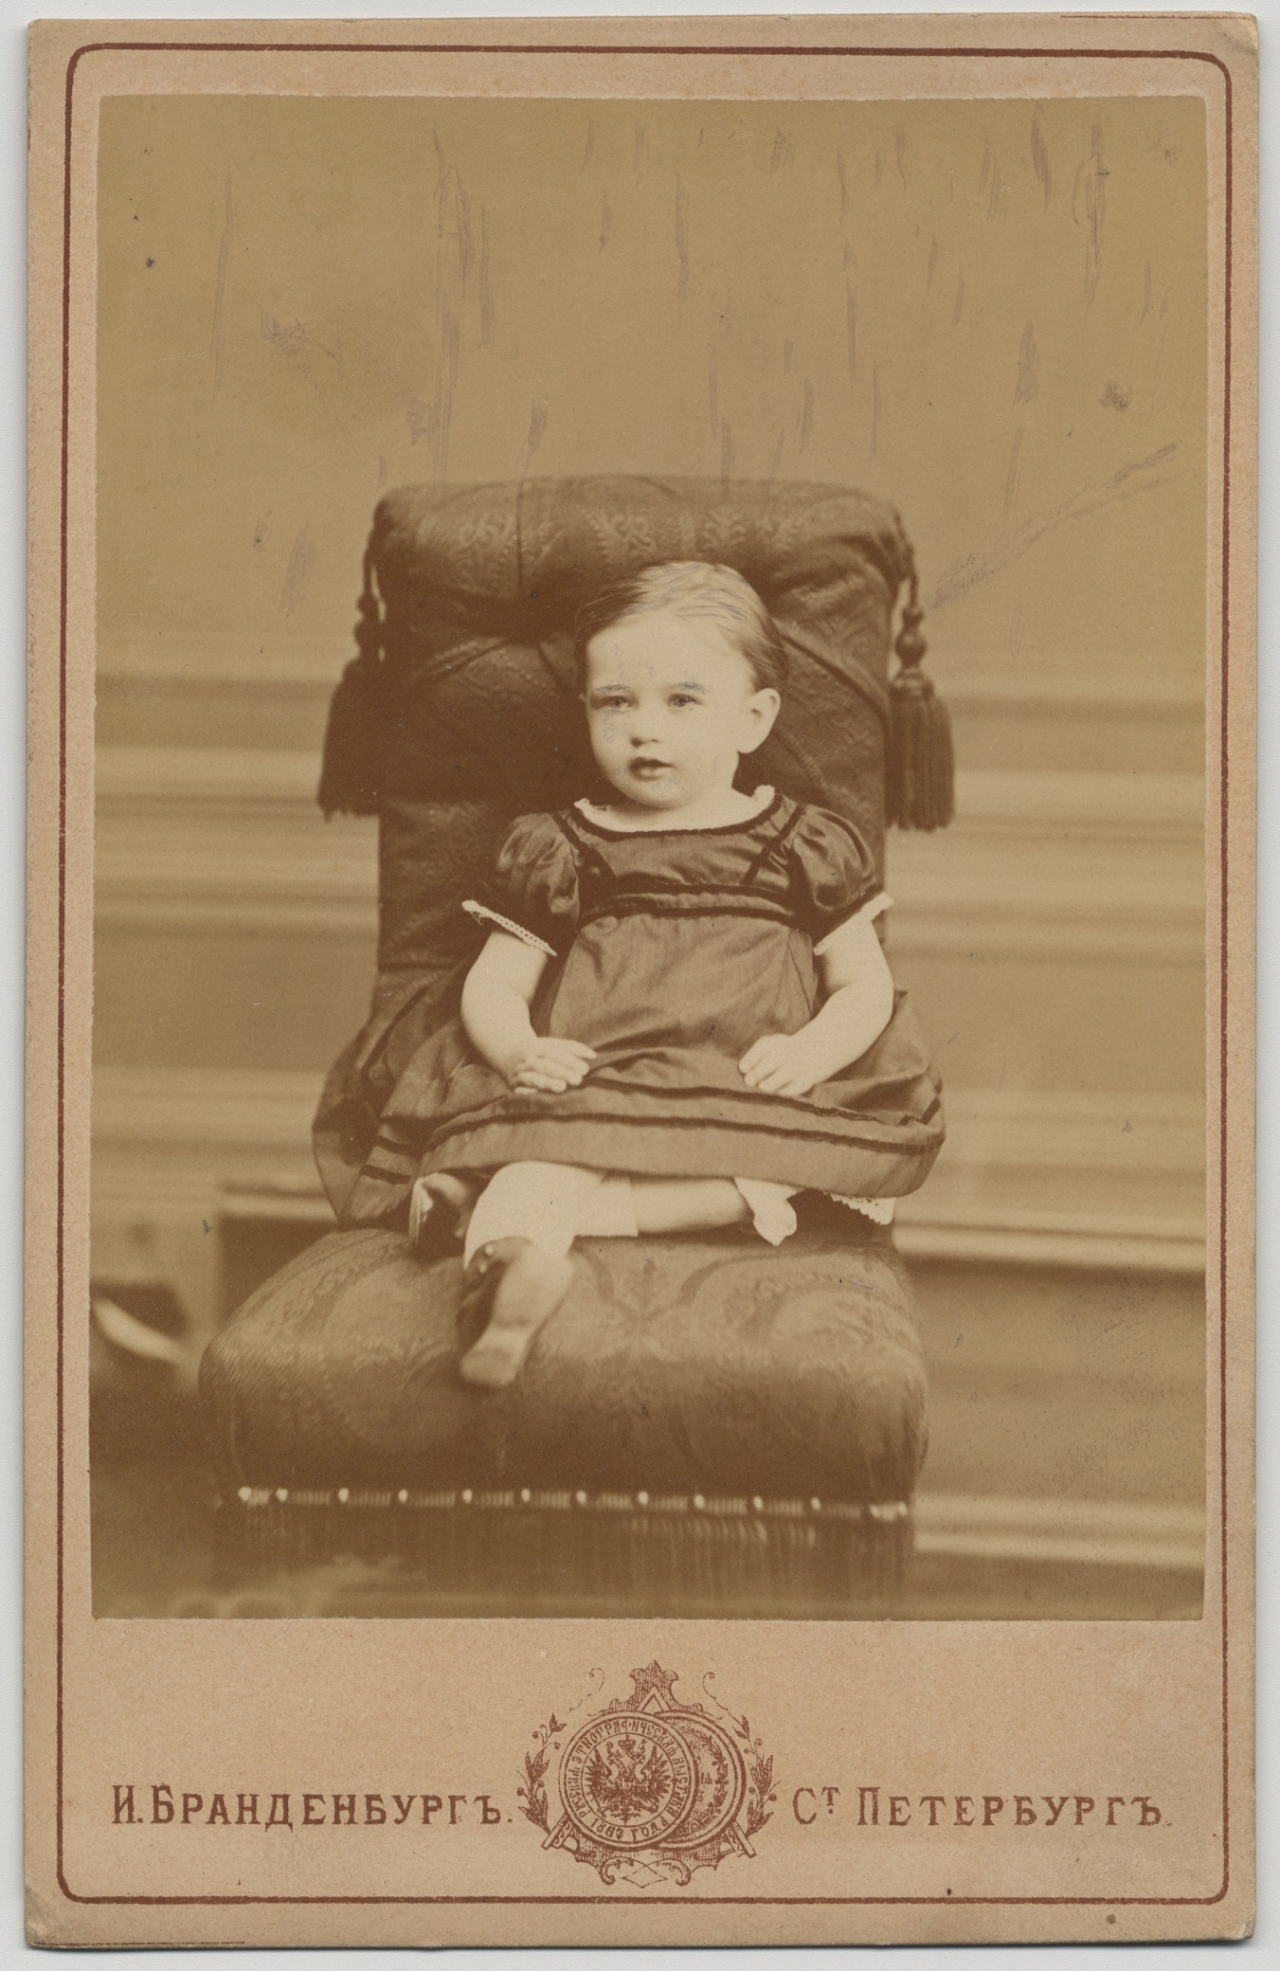 Kārļa Baumaņa meita ANNA KAROLĪNE ELMĪRA BAUMANE 1872. gadā. Viņas mūžs aprāvās jau piecu gadu vecumā.